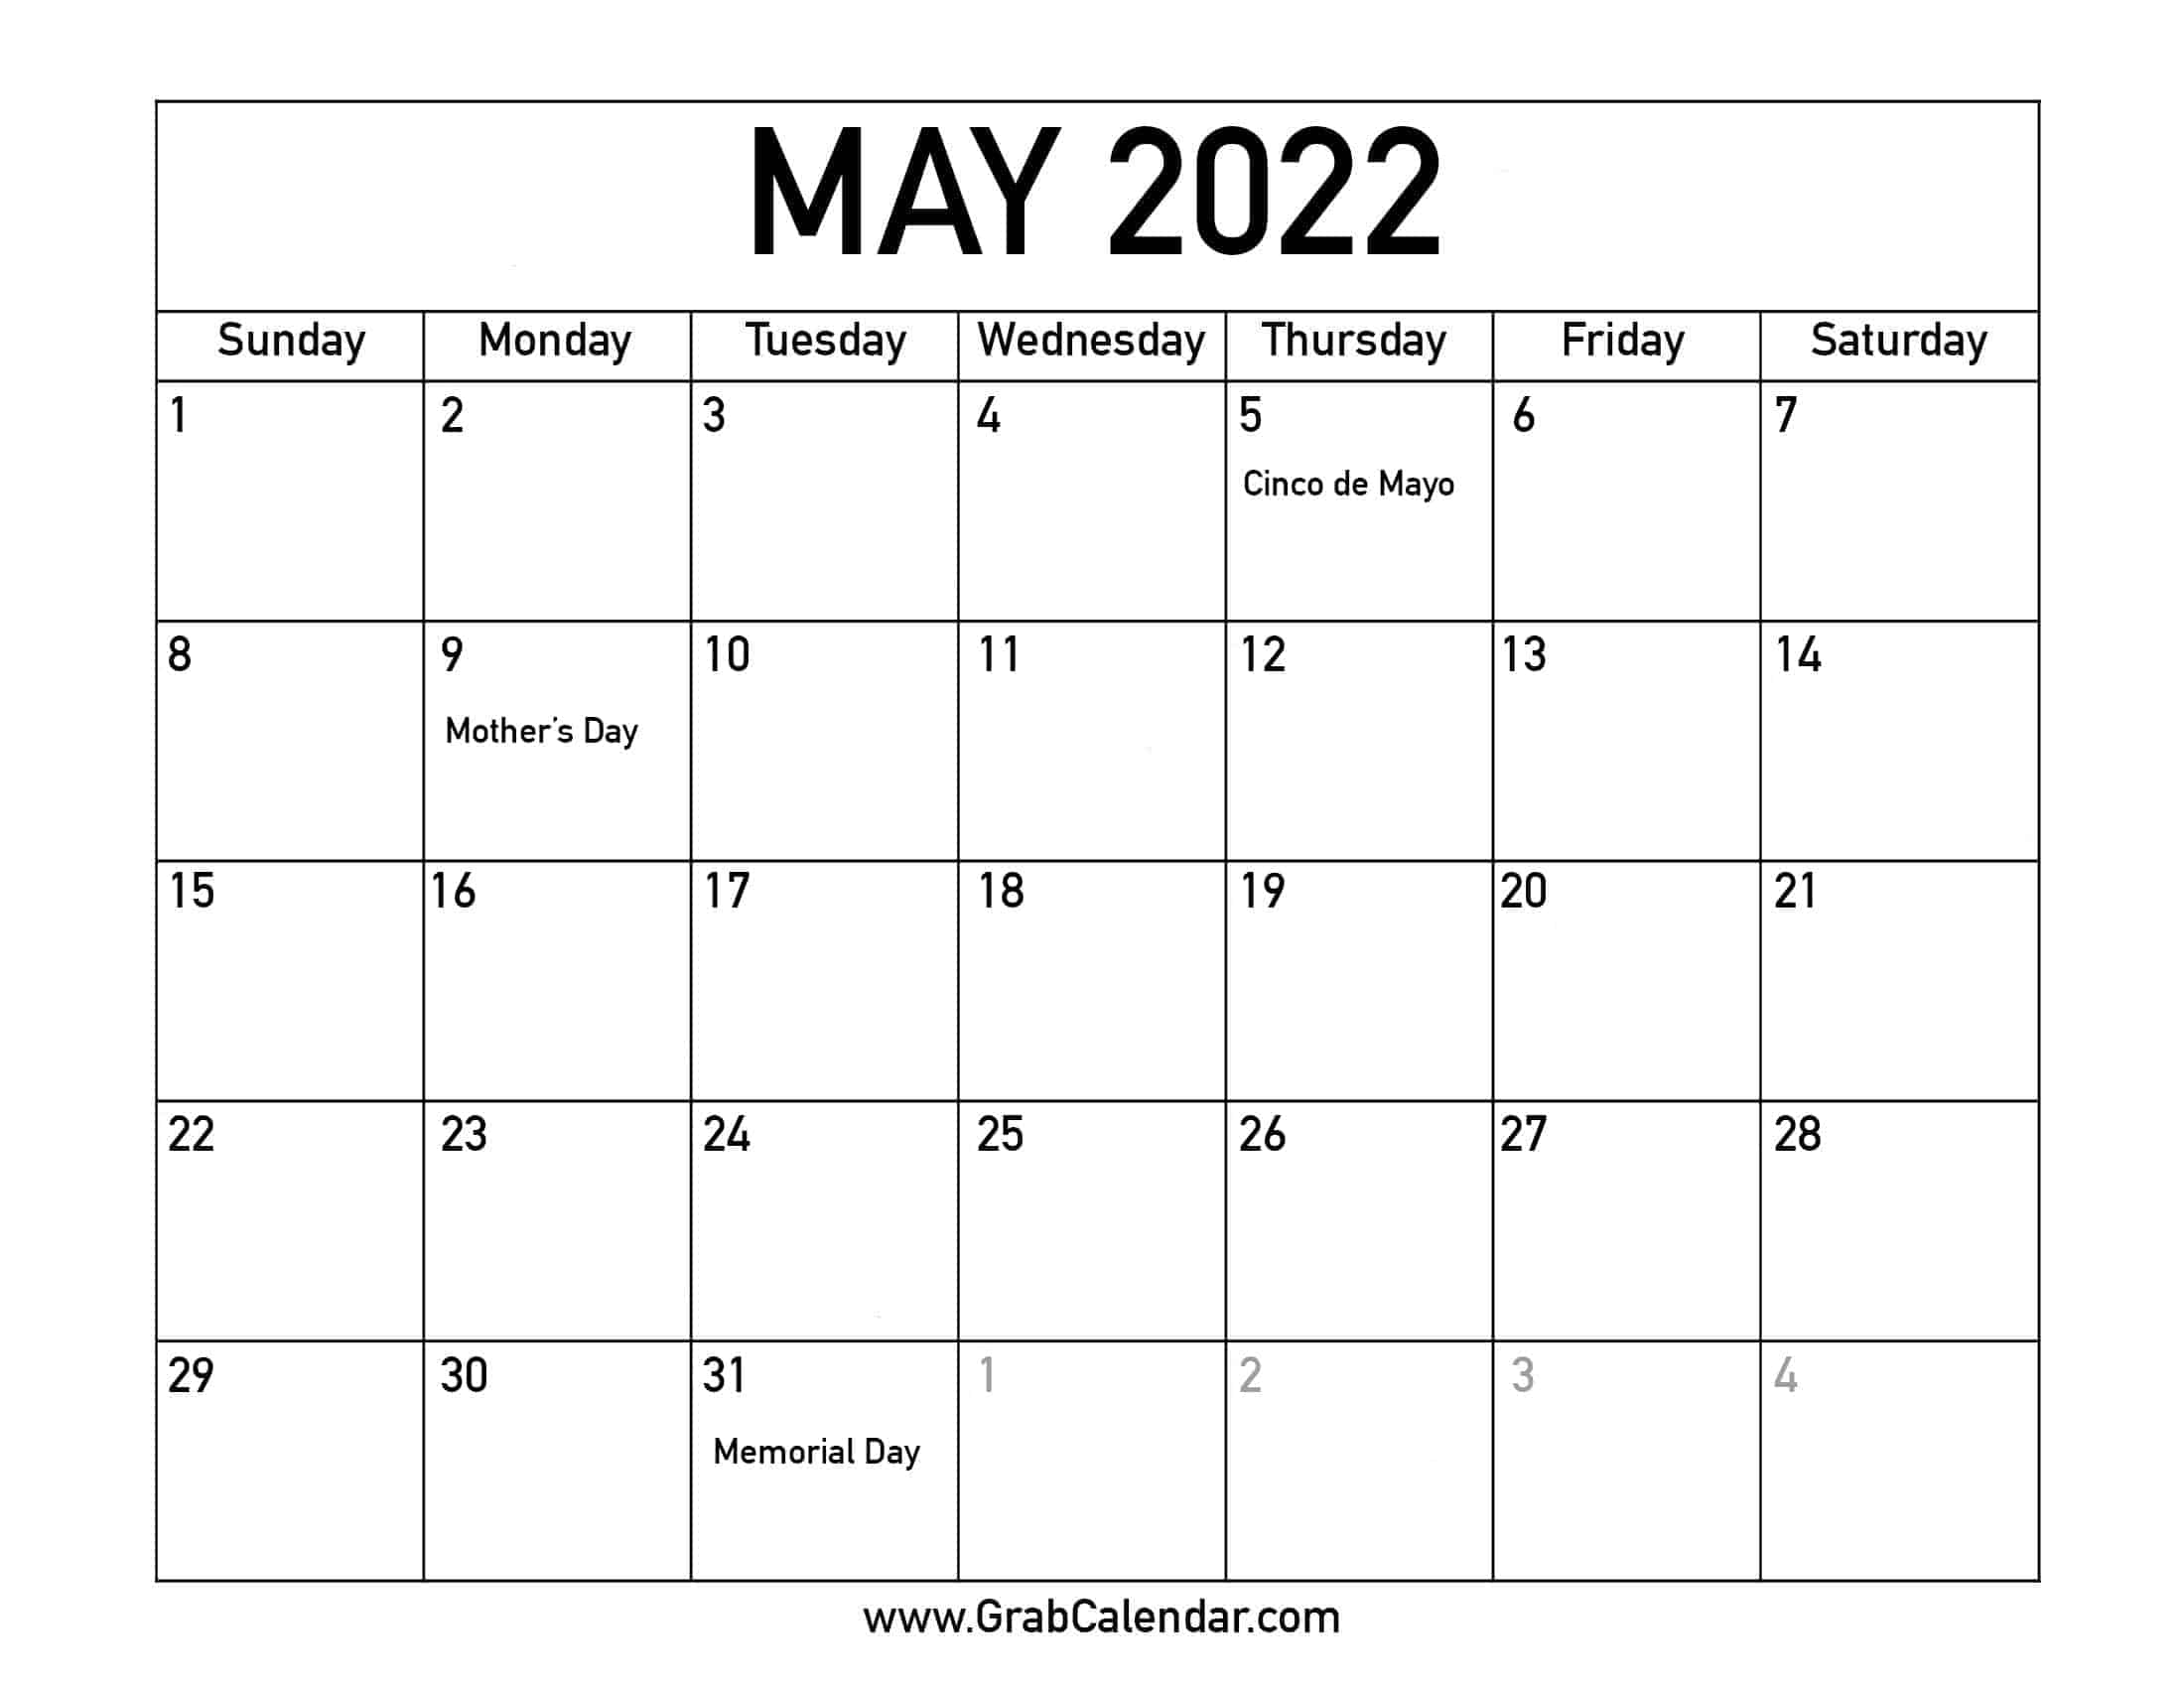 May 2022 Calendar Holidays Printable May 2022 Calendar